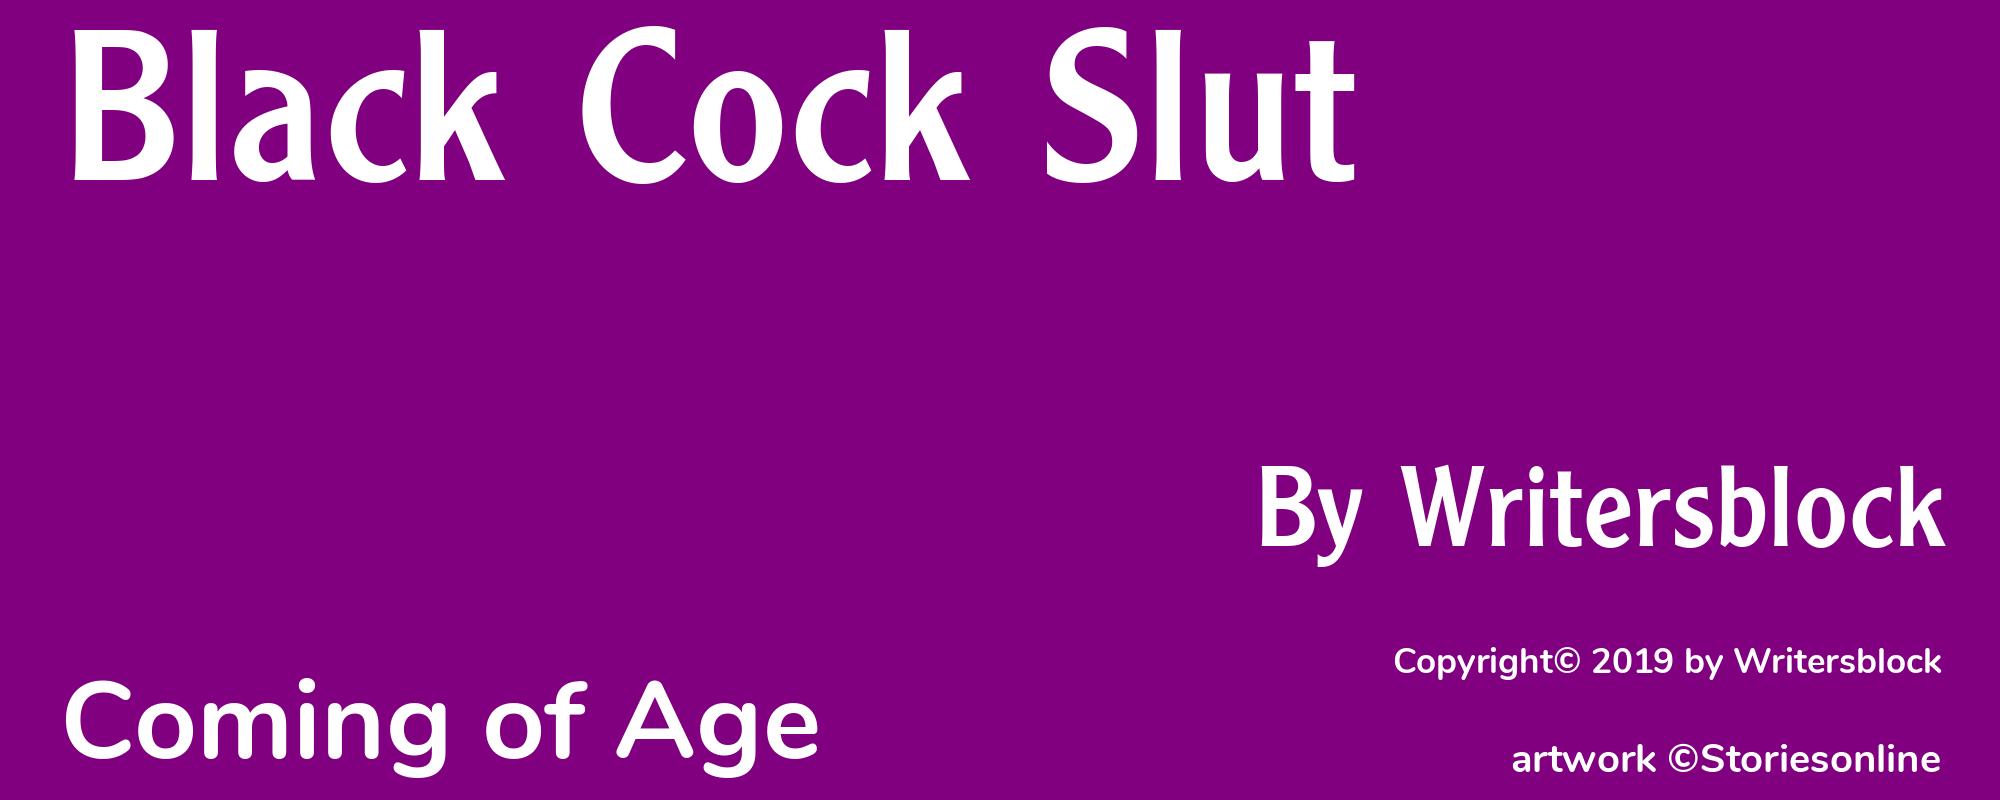 Black Cock Slut - Cover